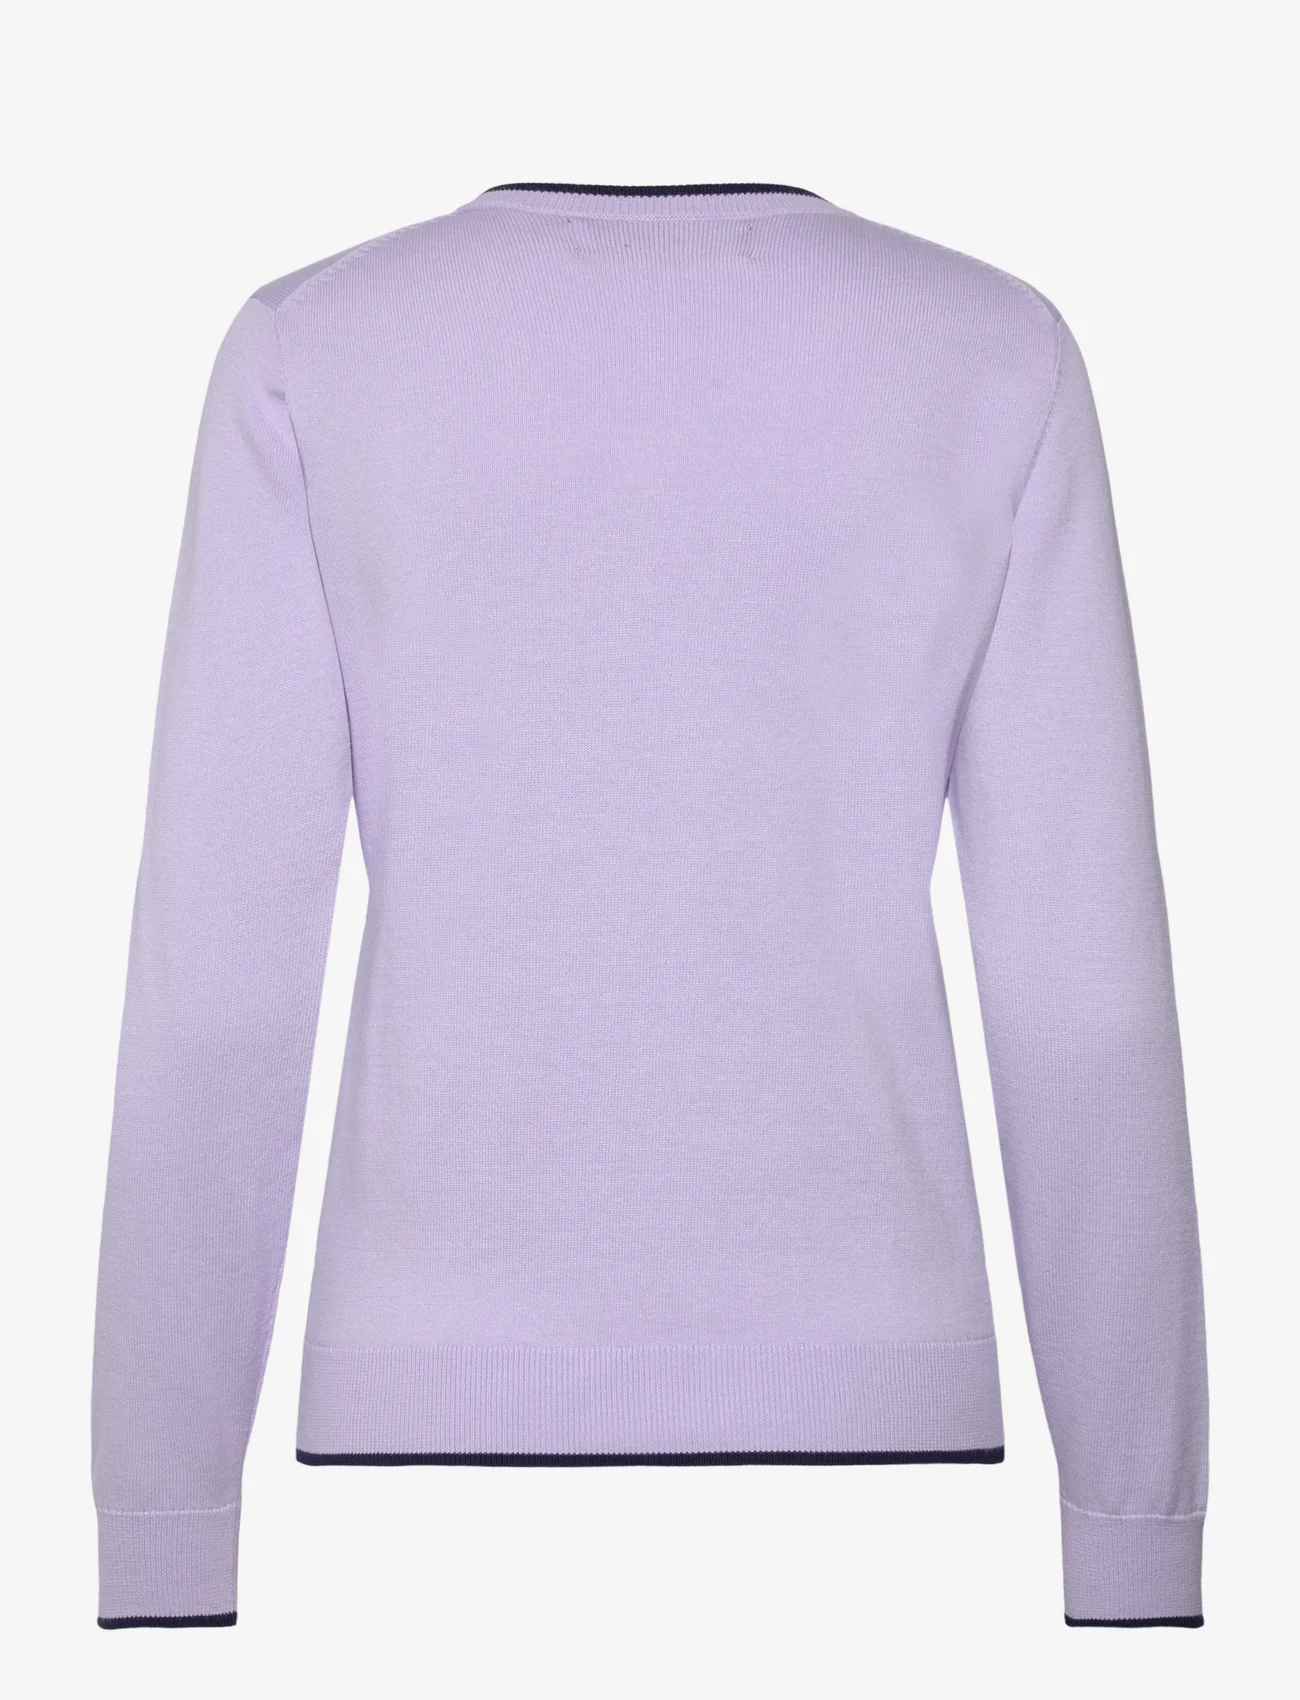 Ralph Lauren Golf - Cotton-Blend V-Neck Sweater - džemprid - flower purple - 1